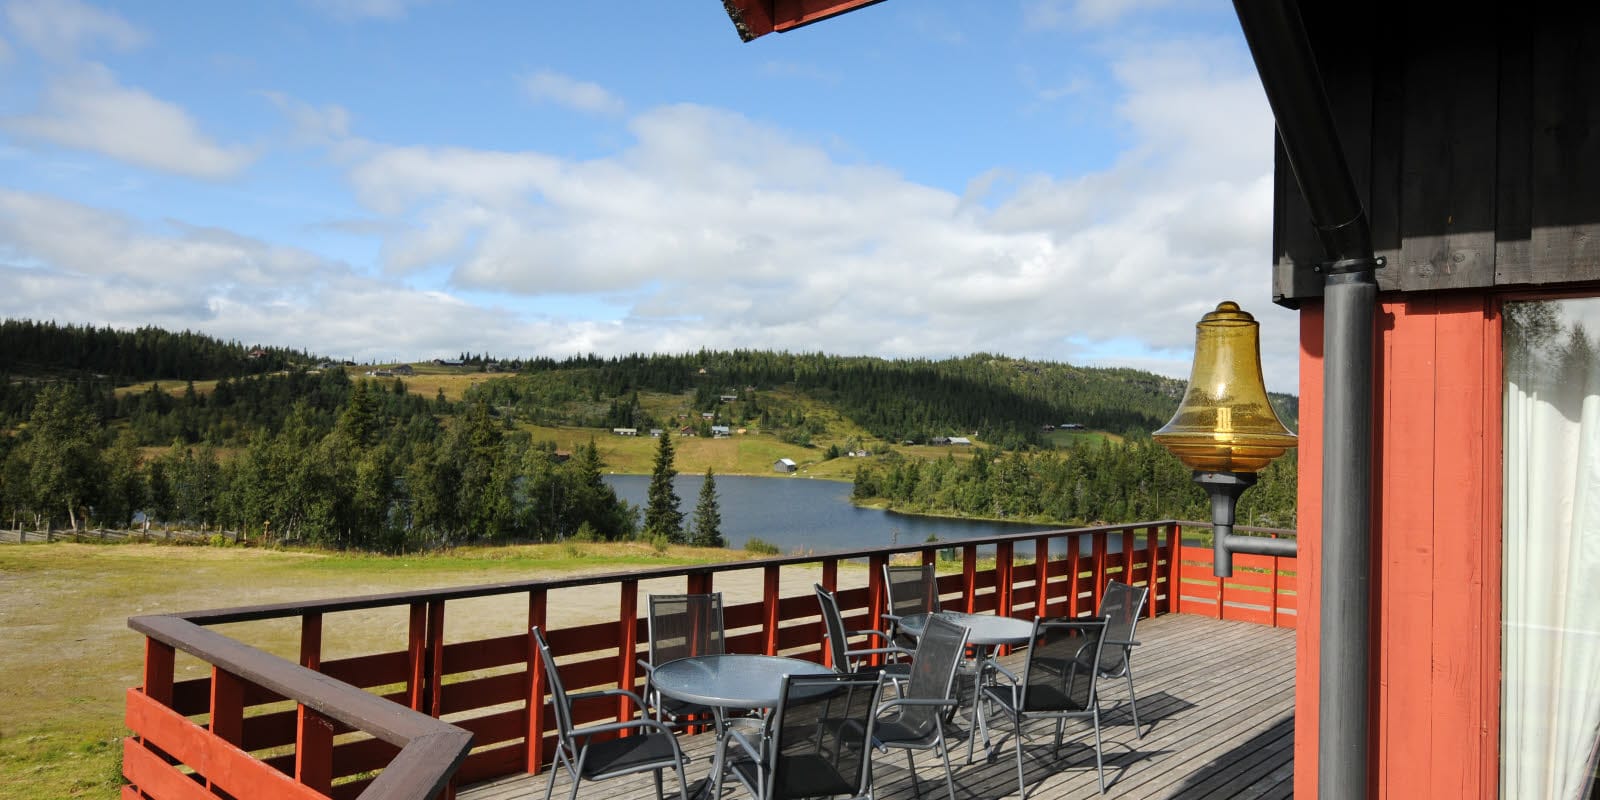 Veranda mit Aussicht auf die Berge, Sitzplätze und Sonne an der Berghütte Austlid Fjellstue, die zum Thon Hotel Skeikampen gehört